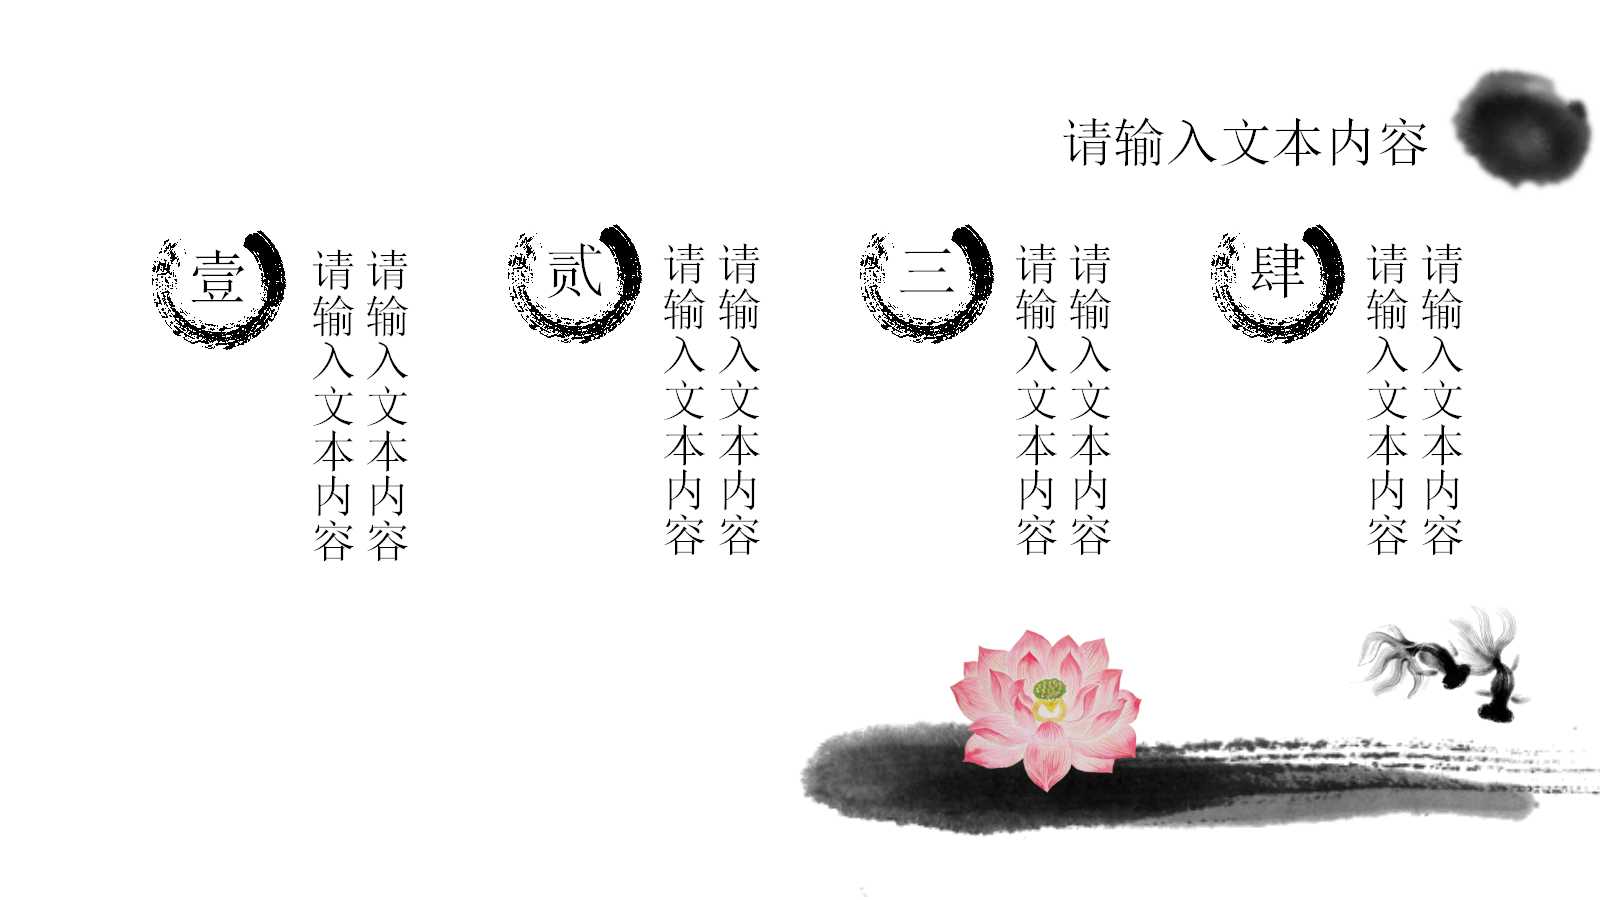 古典中国风幻灯片模板